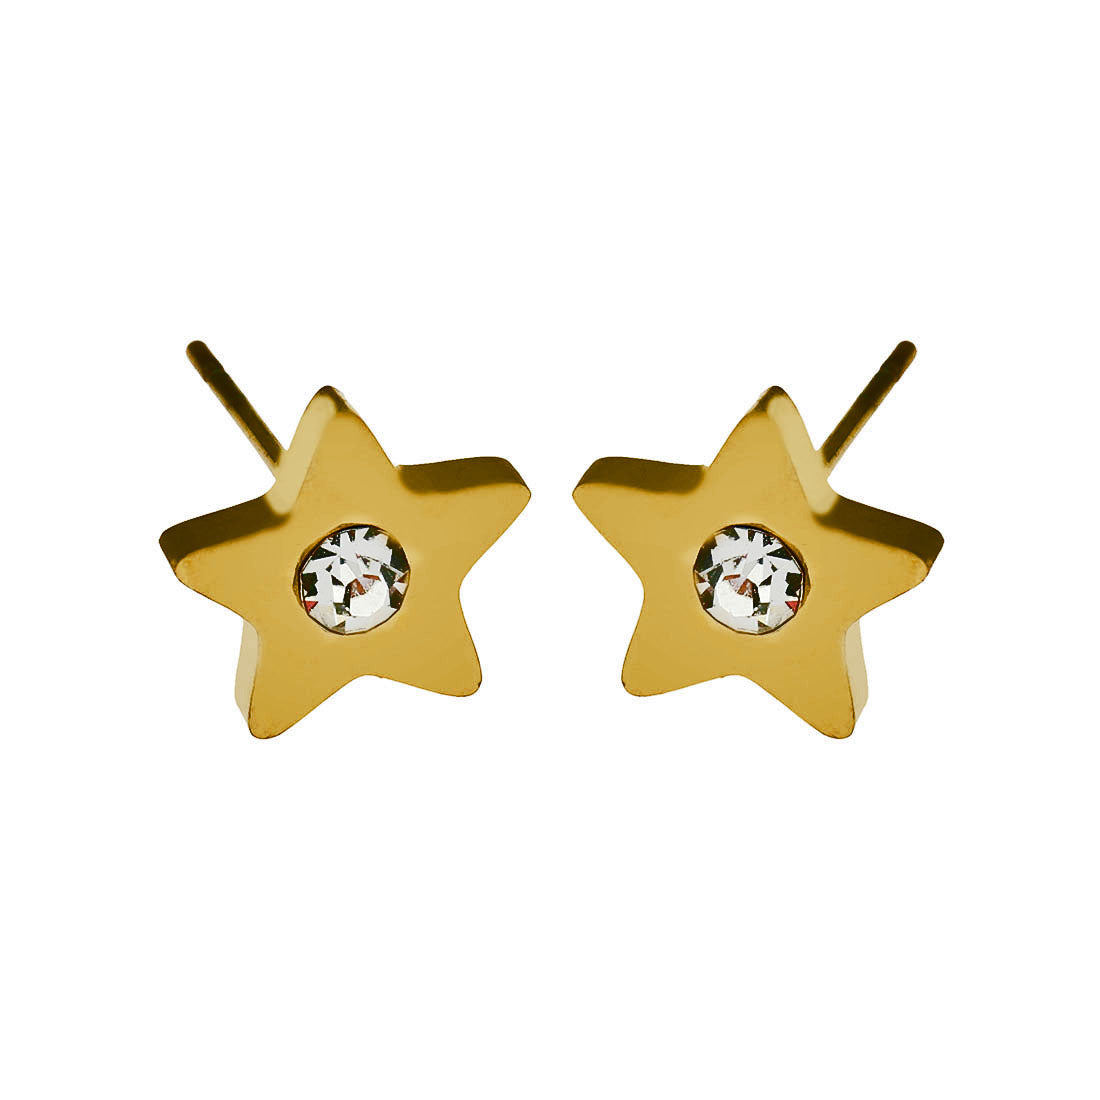 LAYLA21021 _stud_earings| hackney nine | hackneynine | necklace | earrings | charms | jewelry | jewelry-store | pandora | bracelet | shop-jewelry | gold-jewelry | heart-Jewelry | Inspirational-jewelry | dainty-jewelry | zirconia | star jewelry